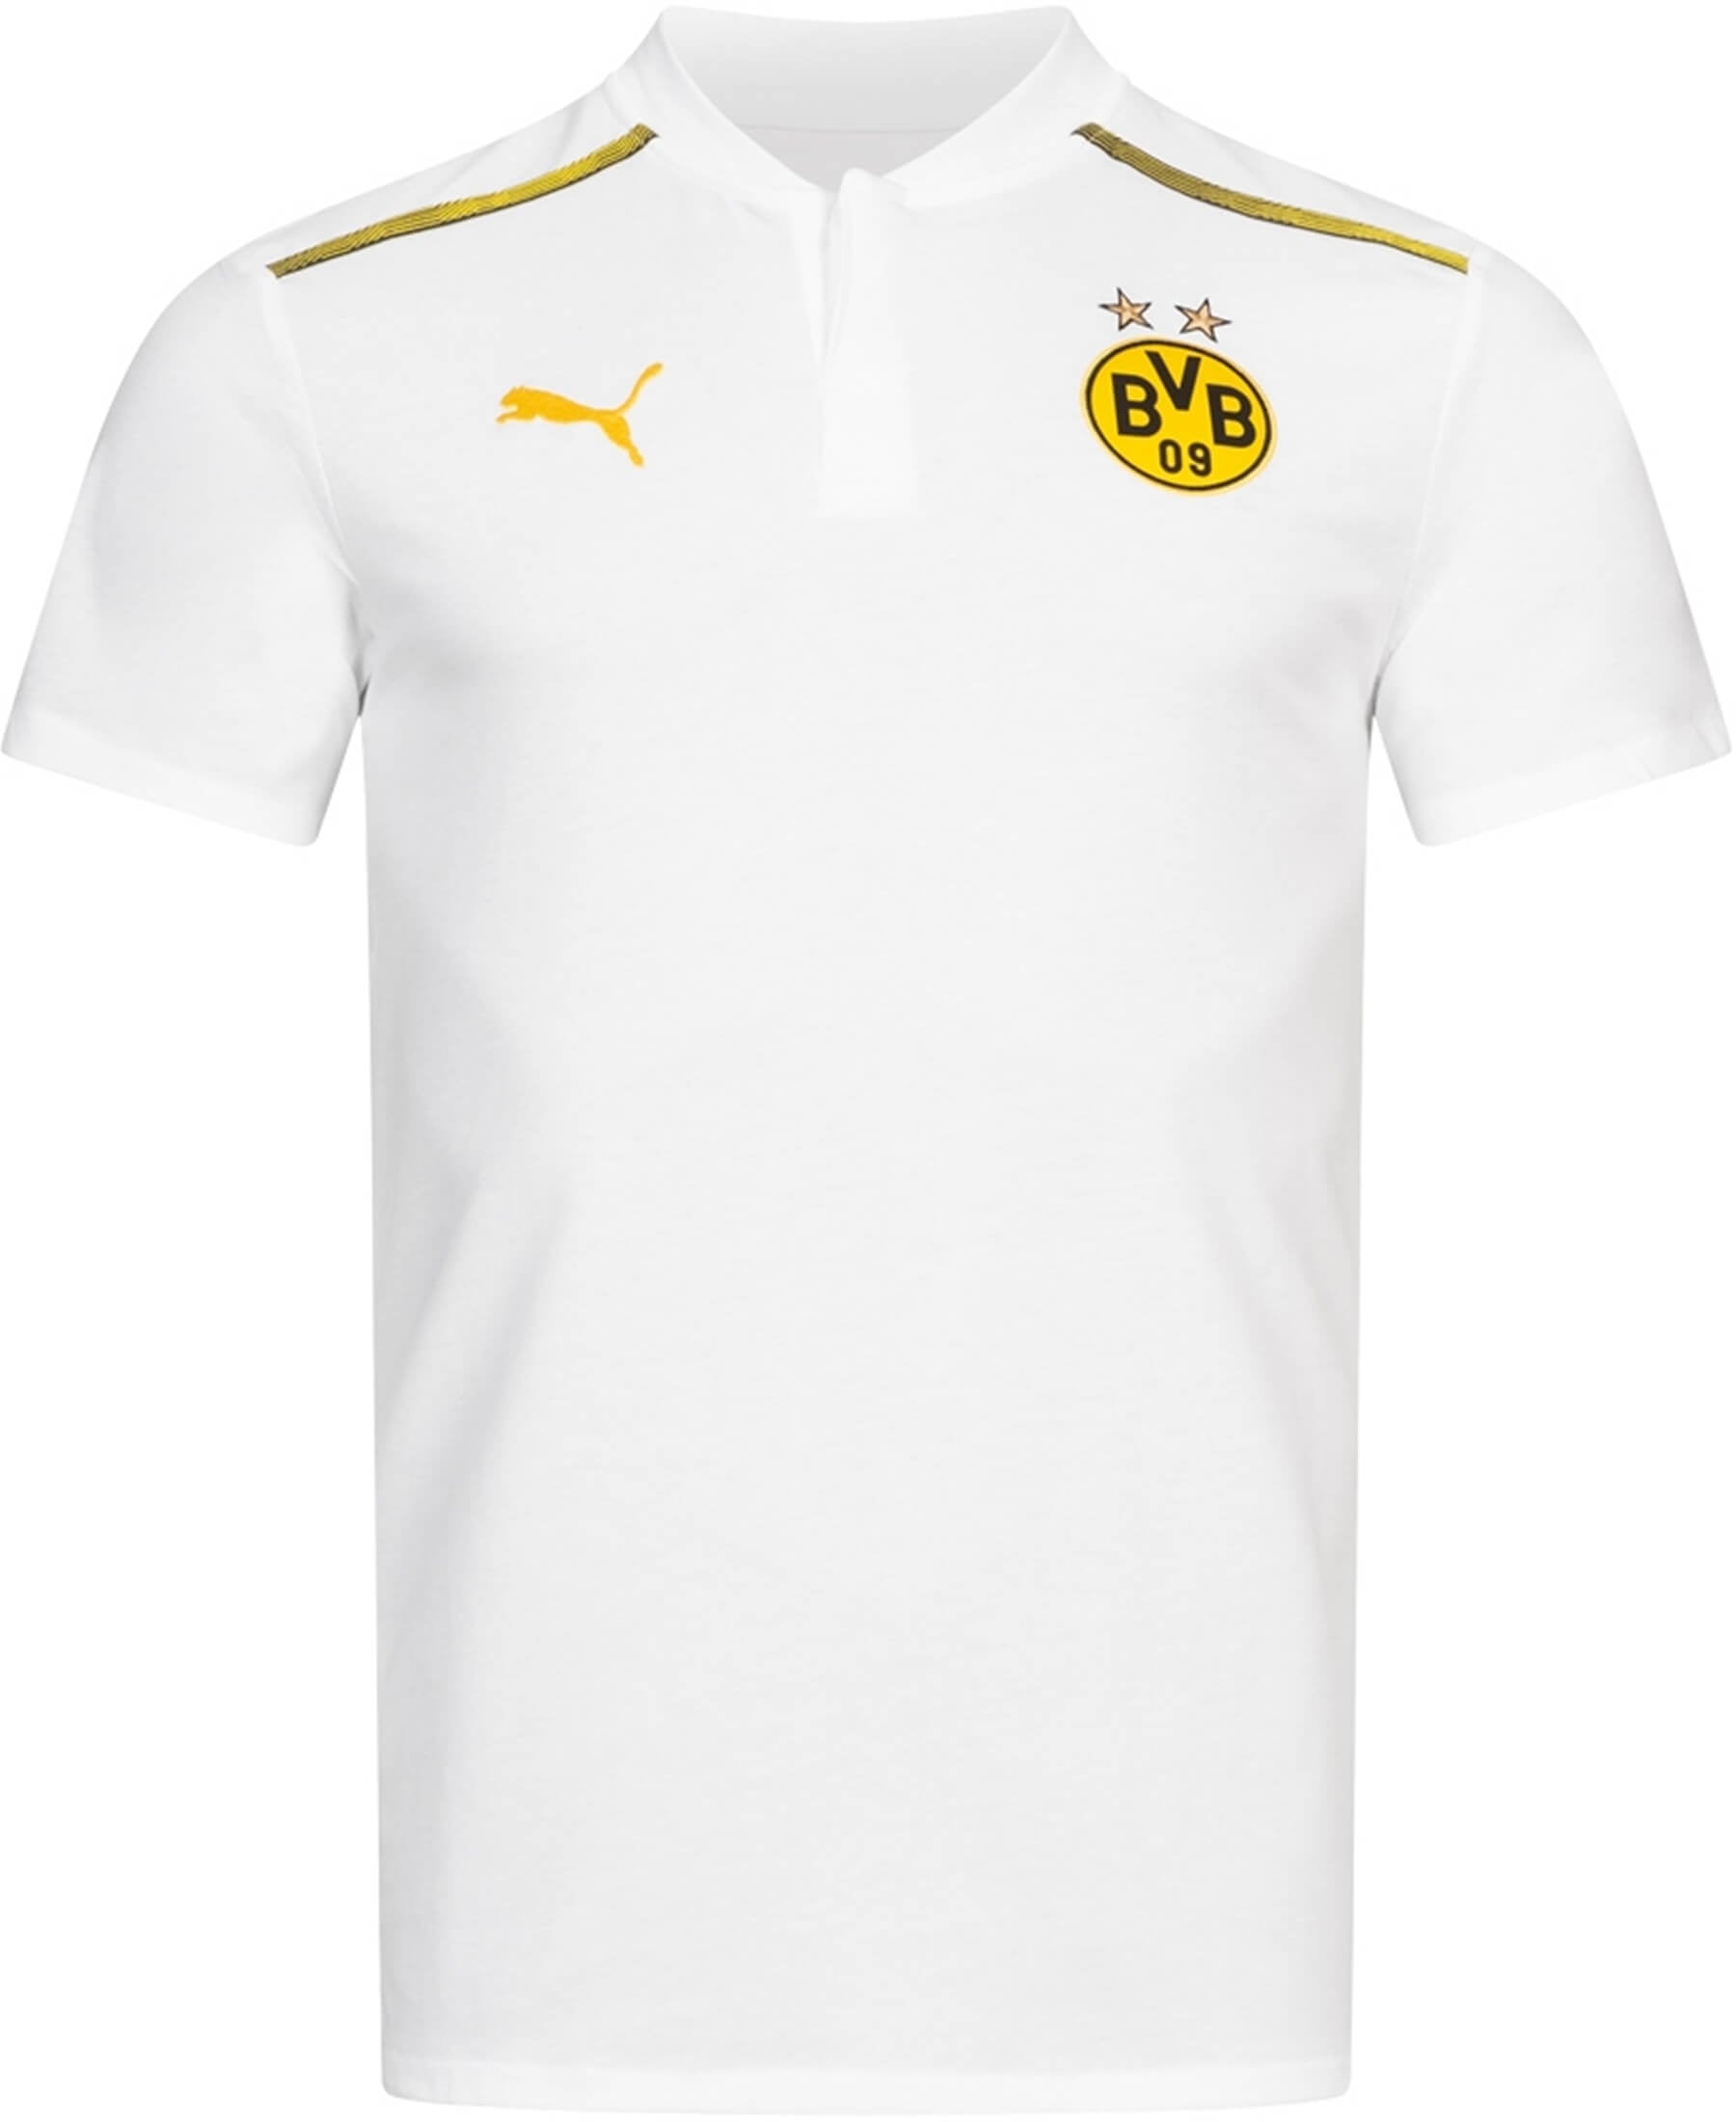 Entdecke das offizielle Borussia Dortmund BVB Casuals Poloshirt bei SHOP4TEAMSPORT. Dieses hochwertige Poloshirt verkörpert den Stil des Vereins und bietet gleichzeitig Komfort für den Alltag. Mit dem BVB-Logo auf der Brust und dem klassischen Polokragen strahlt dieses Shirt Fußballleidenschaft aus. Perfekt für Fans, die ihren Verein auch abseits des Spielfelds repräsentieren möchten. Das bequeme Material gewährleistet angenehmes Tragen.